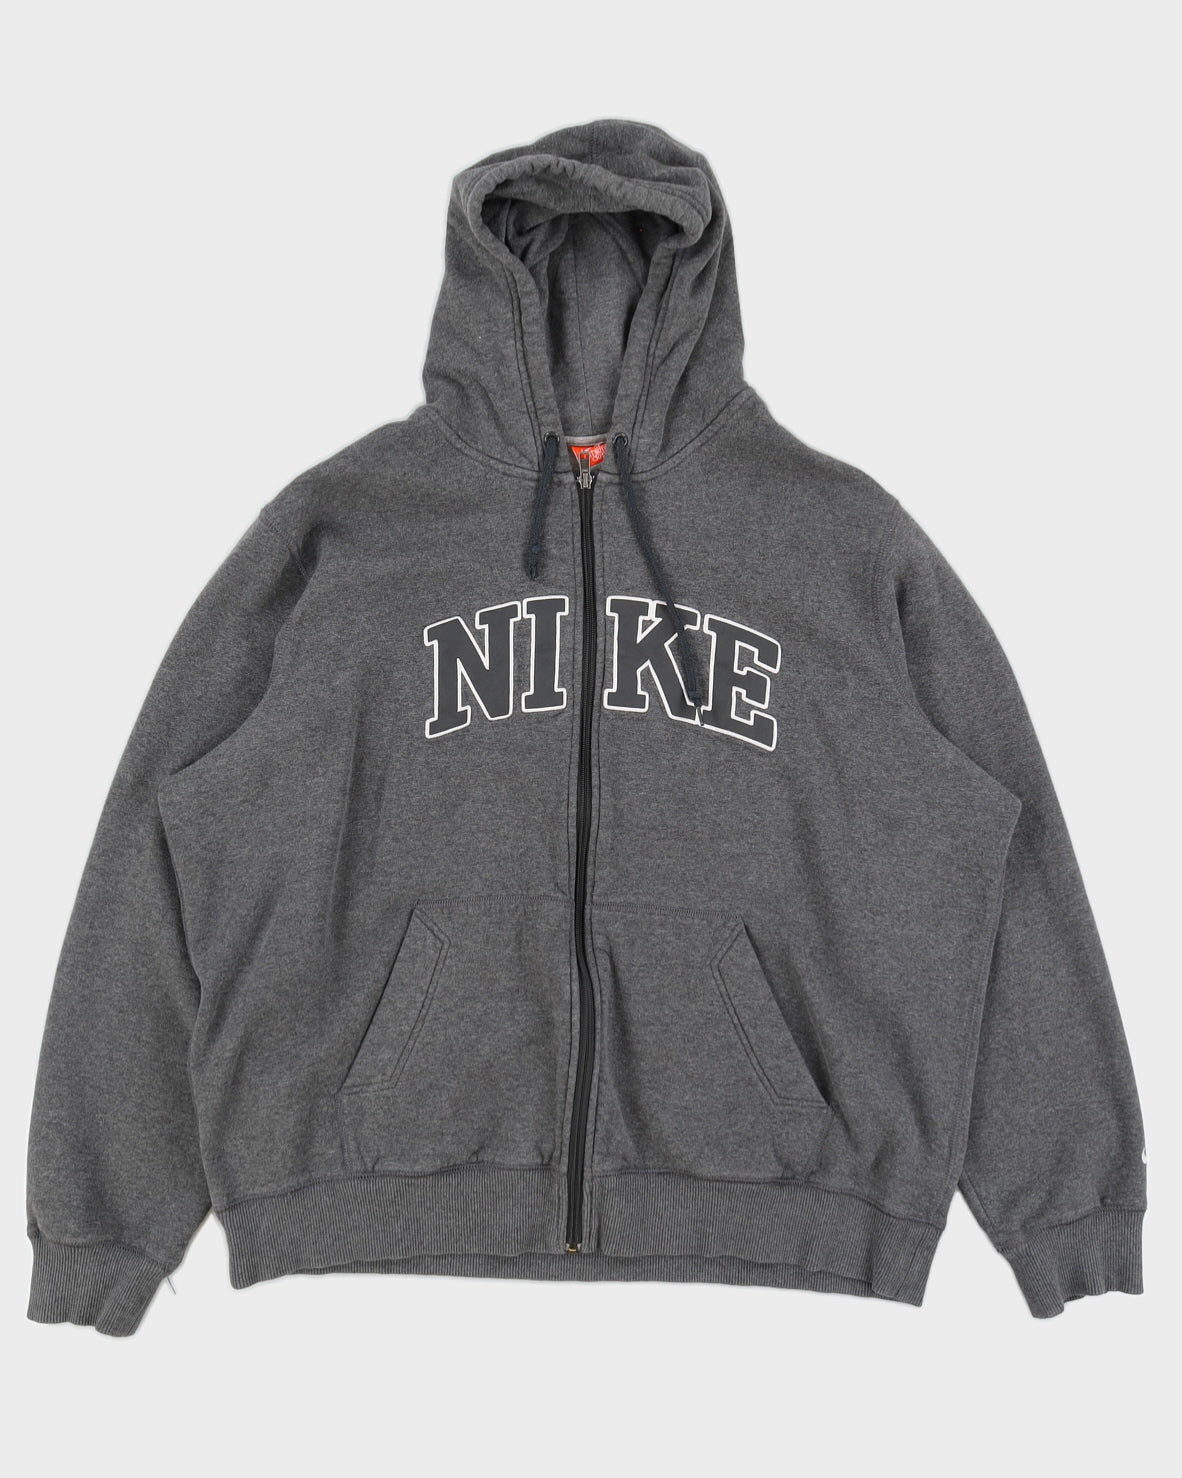 00s Y2K Nike Embroidered Logo Grey Zip Up Hoodie - XXL – Rokit